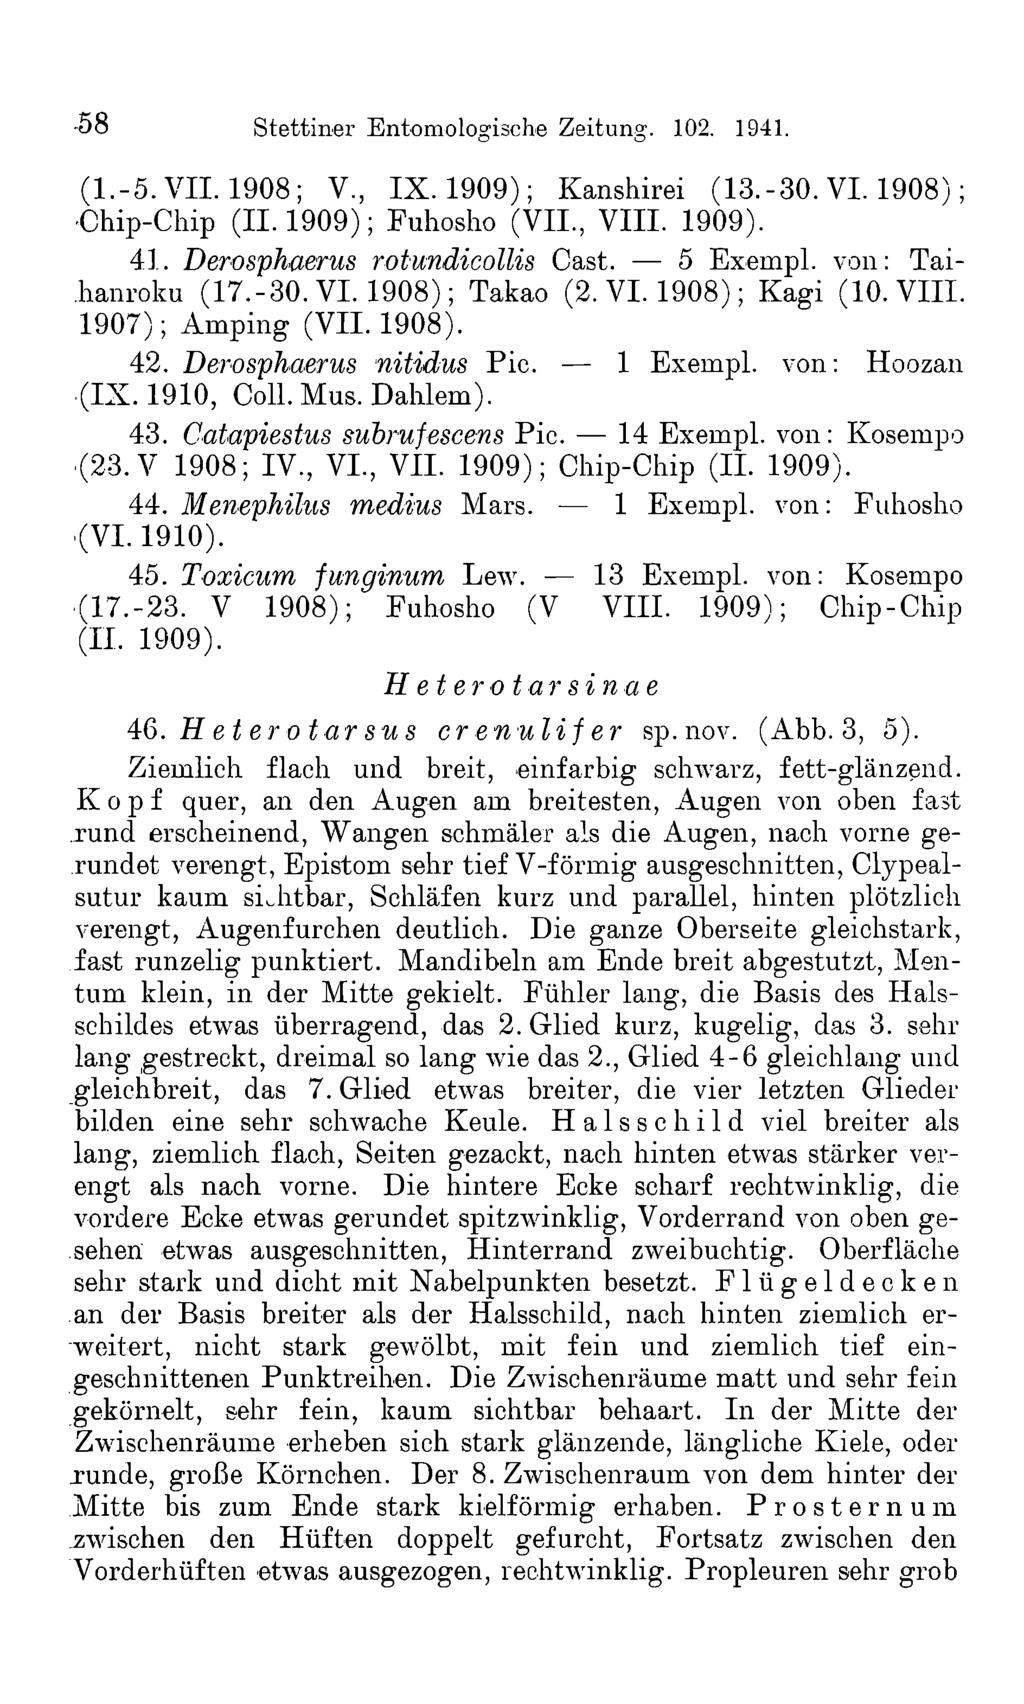 -58 Stettiner Entomologische Zeitung. 102. 1941. (1.-5. VII. 1908; V, IX. 1909); Kanshirei (13.-30. VI. 1908); Chip-Chip (11.1909); Fuhosho (VII., VIII. 1909). 41. Derosphaerus rotundicollis Cast.